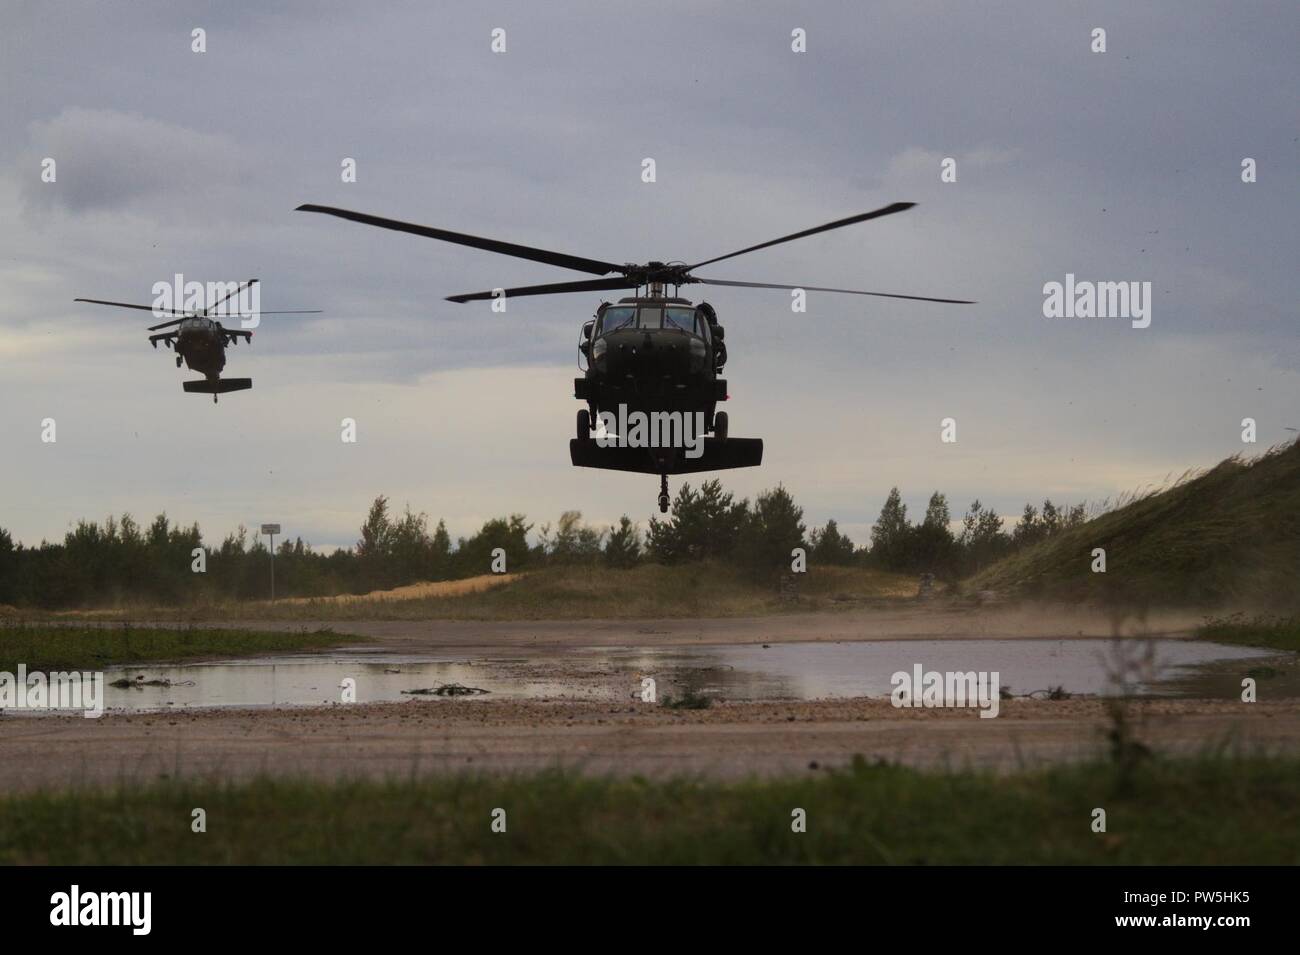 US Army UH-60 i falchi nero dal terzo supporto generale del battaglione di aviazione, decimo reggimento di aviazione, decimo combattere la Brigata Aerea, decimo Montagna divisione, touch down per scortare i soldati dal 1° Stormo, 91º reggimento di cavalleria, 173rd Airborne Brigade Adazi Area Formazione, Lettonia il 19 settembre 2017. Il CAV 1-91 e 3-10 GSAB sono attualmente operativi in Lettonia come parte della protezione a baionetta, una regione ampia esercizio da svolgersi nei paesi baltici per costruire la prontezza nel corso di addestramento realistico esercita tra gli Stati Uniti e i suoi alleati della NATO e partner, compresi il loro avanzamento rafforzata presenza battaglia Foto Stock